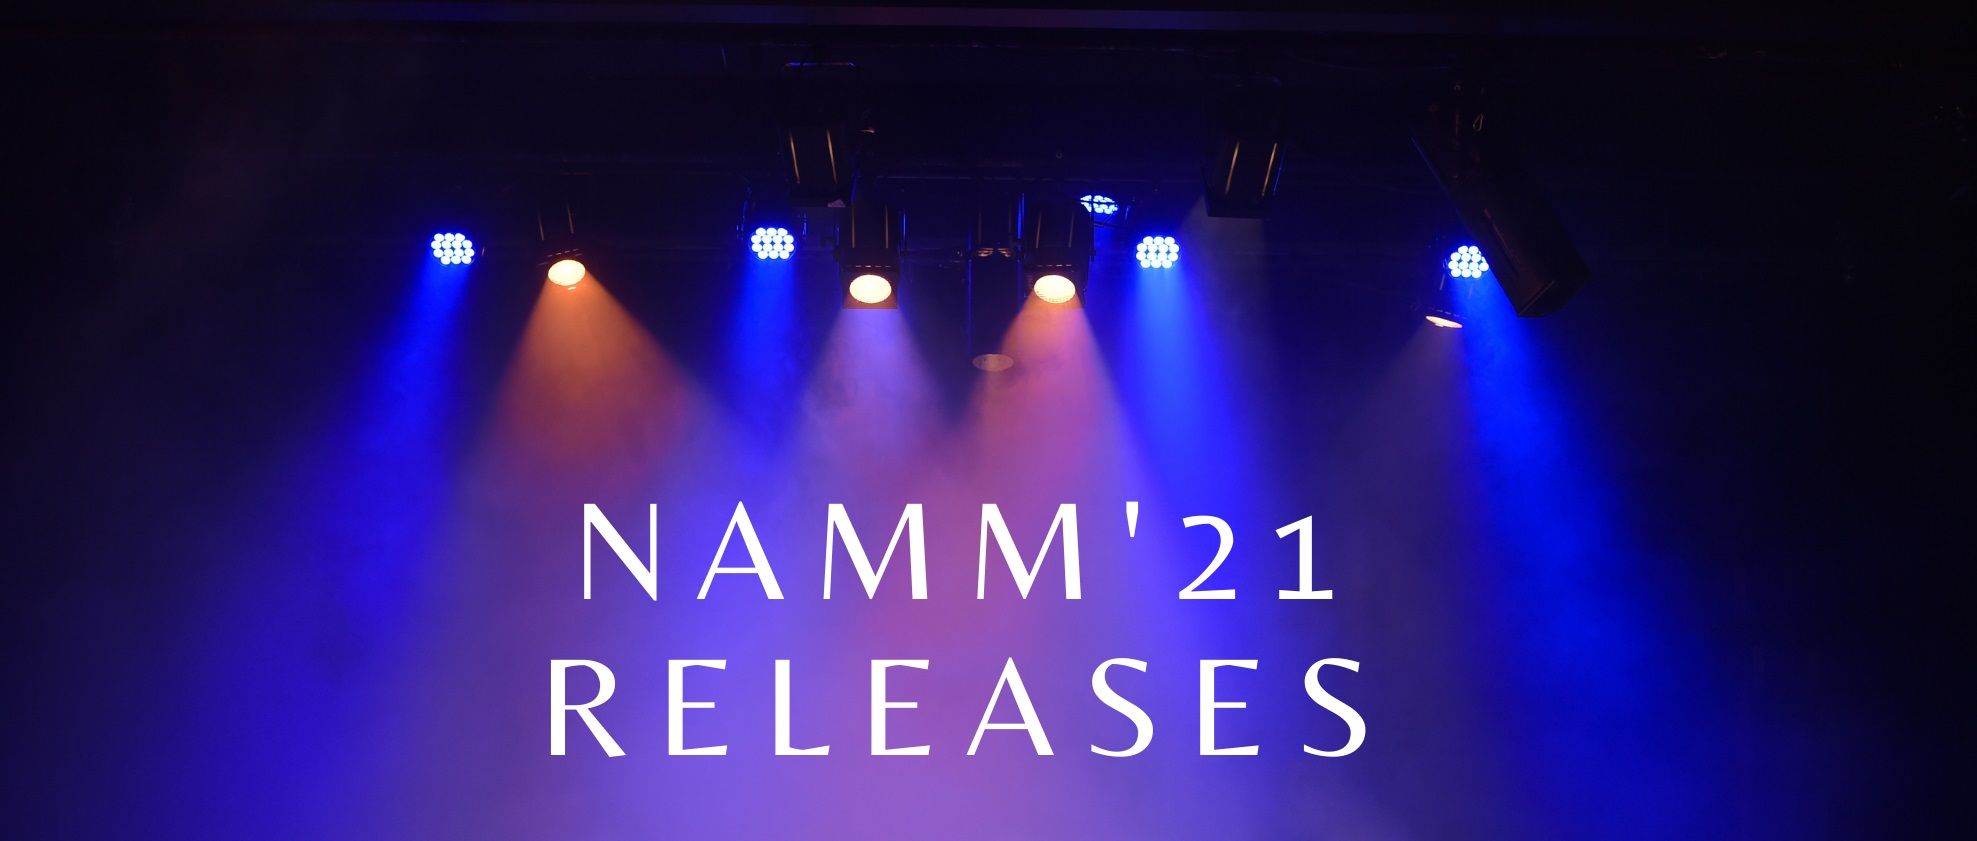 Namm '21 releases bij Oostendorp